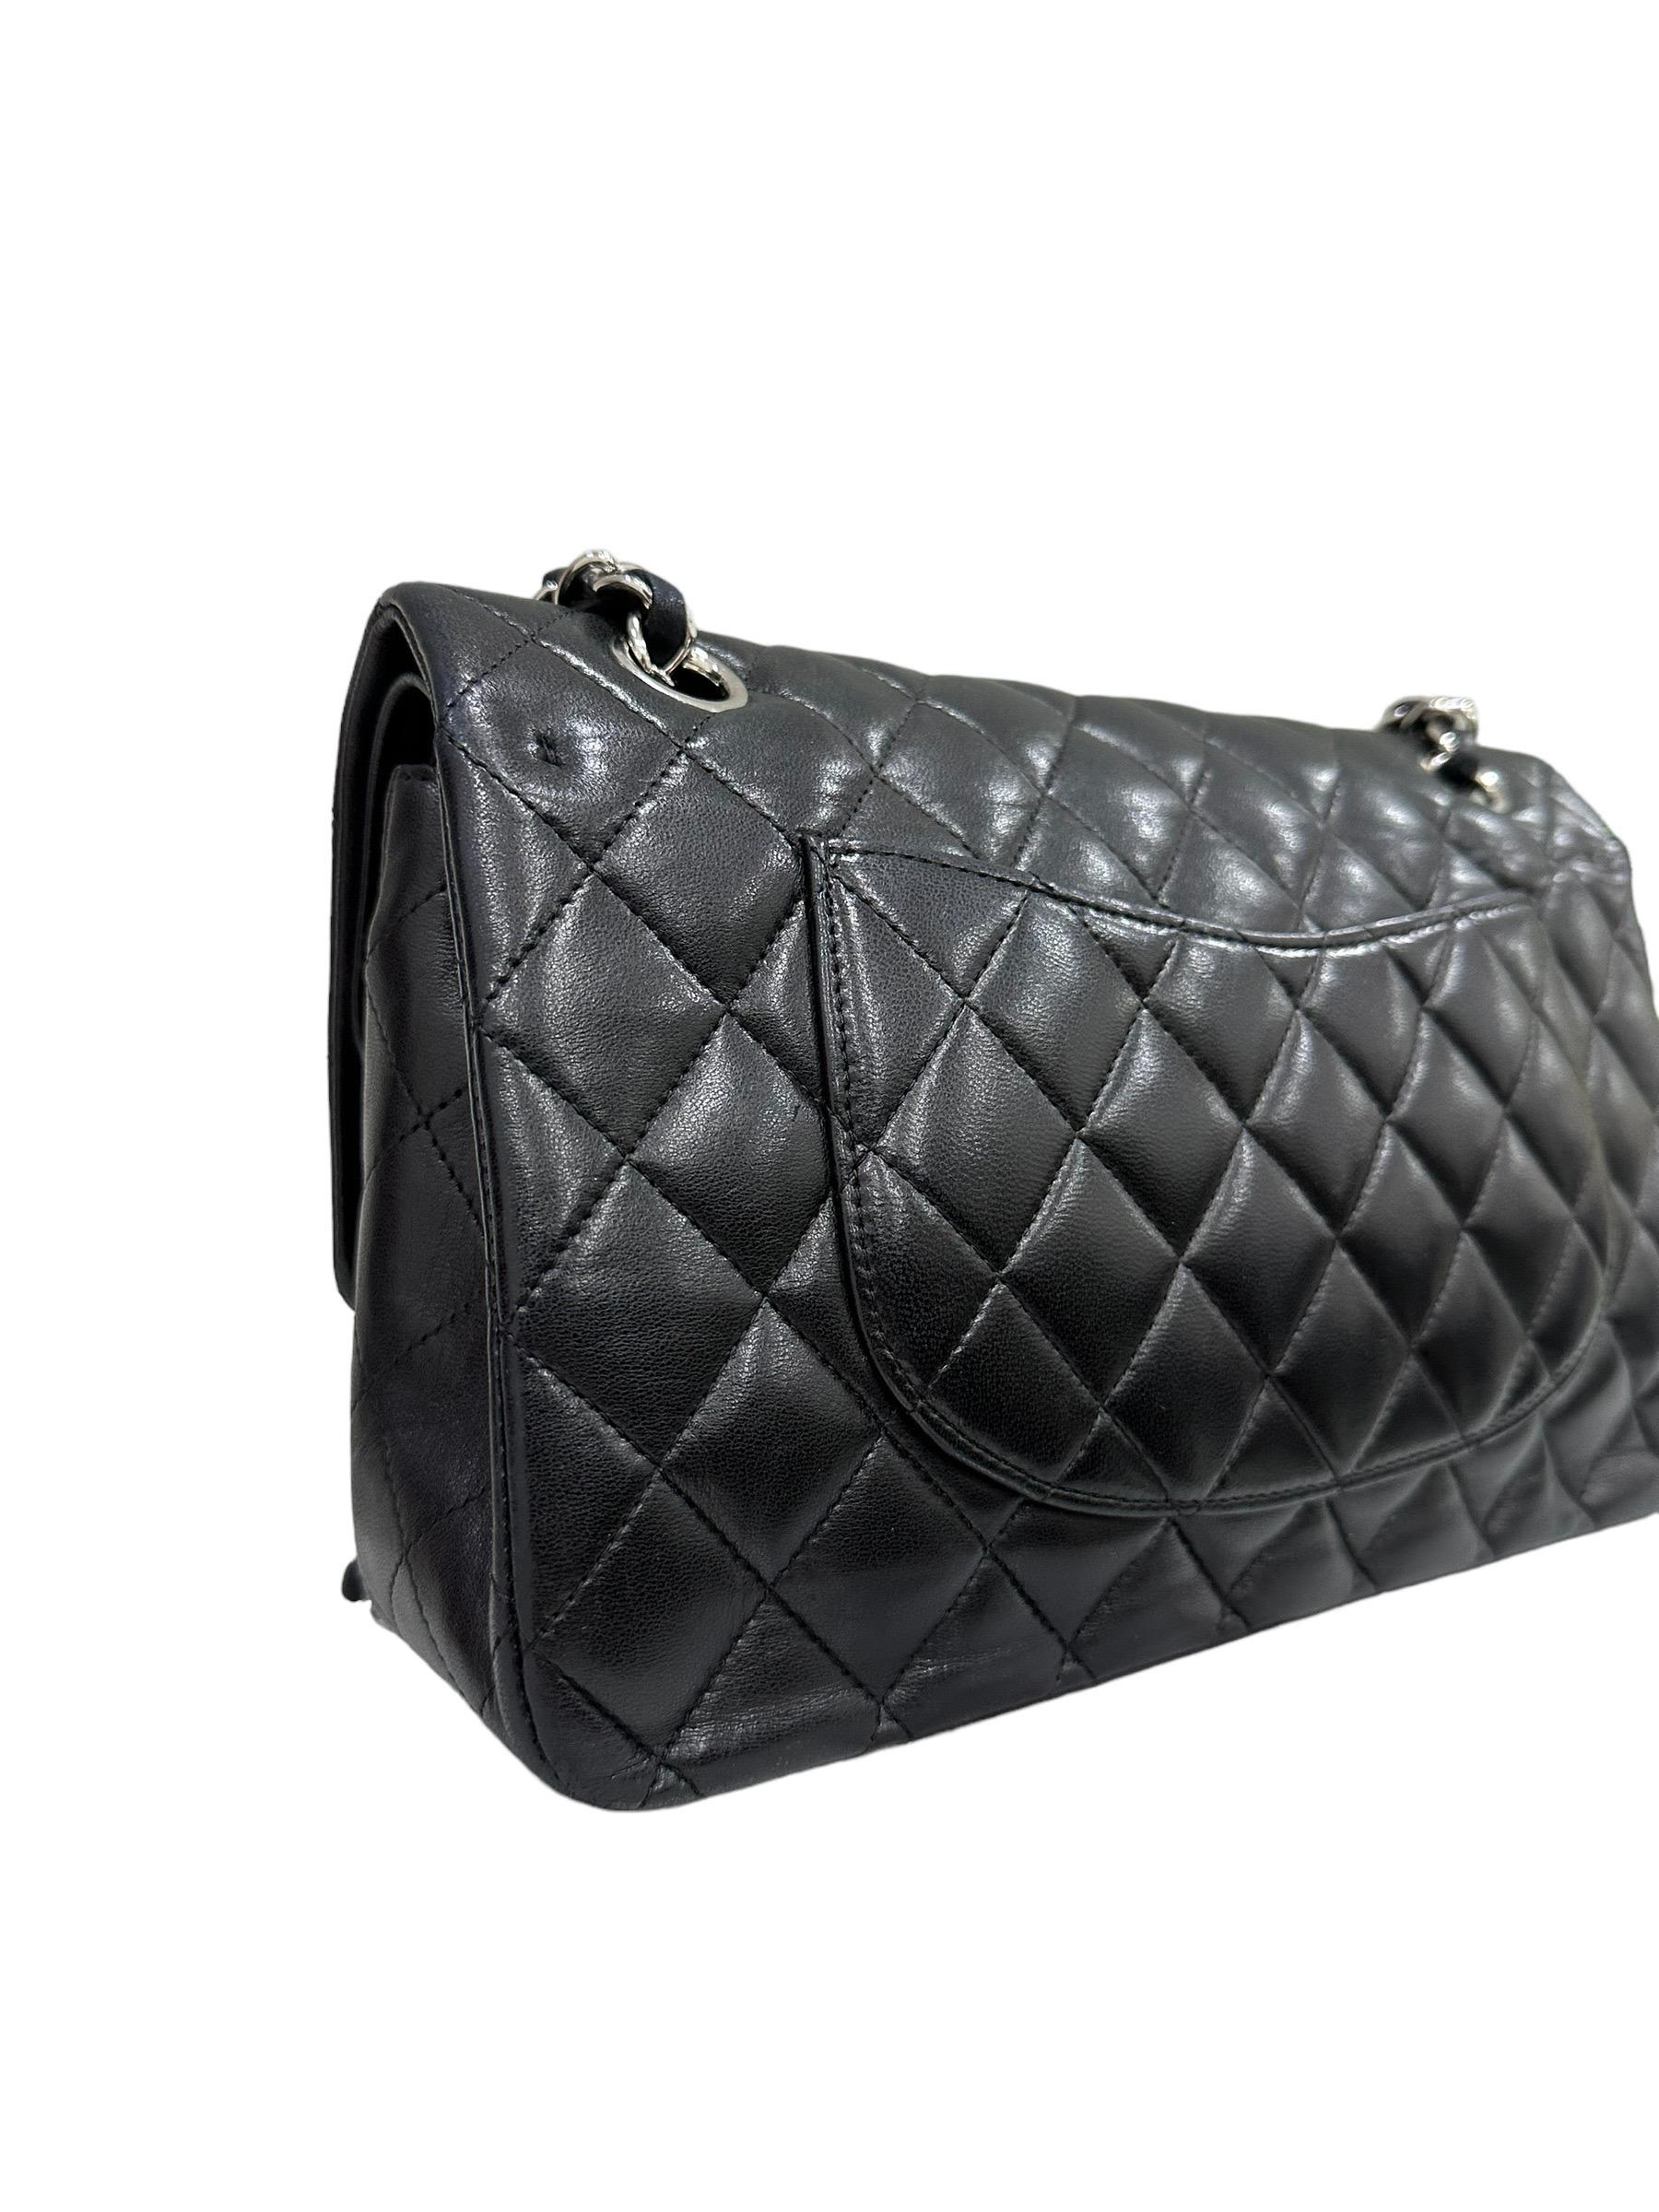 2008 Chanel. 2.55 Timeless Black Leather Shoulder Bag 5